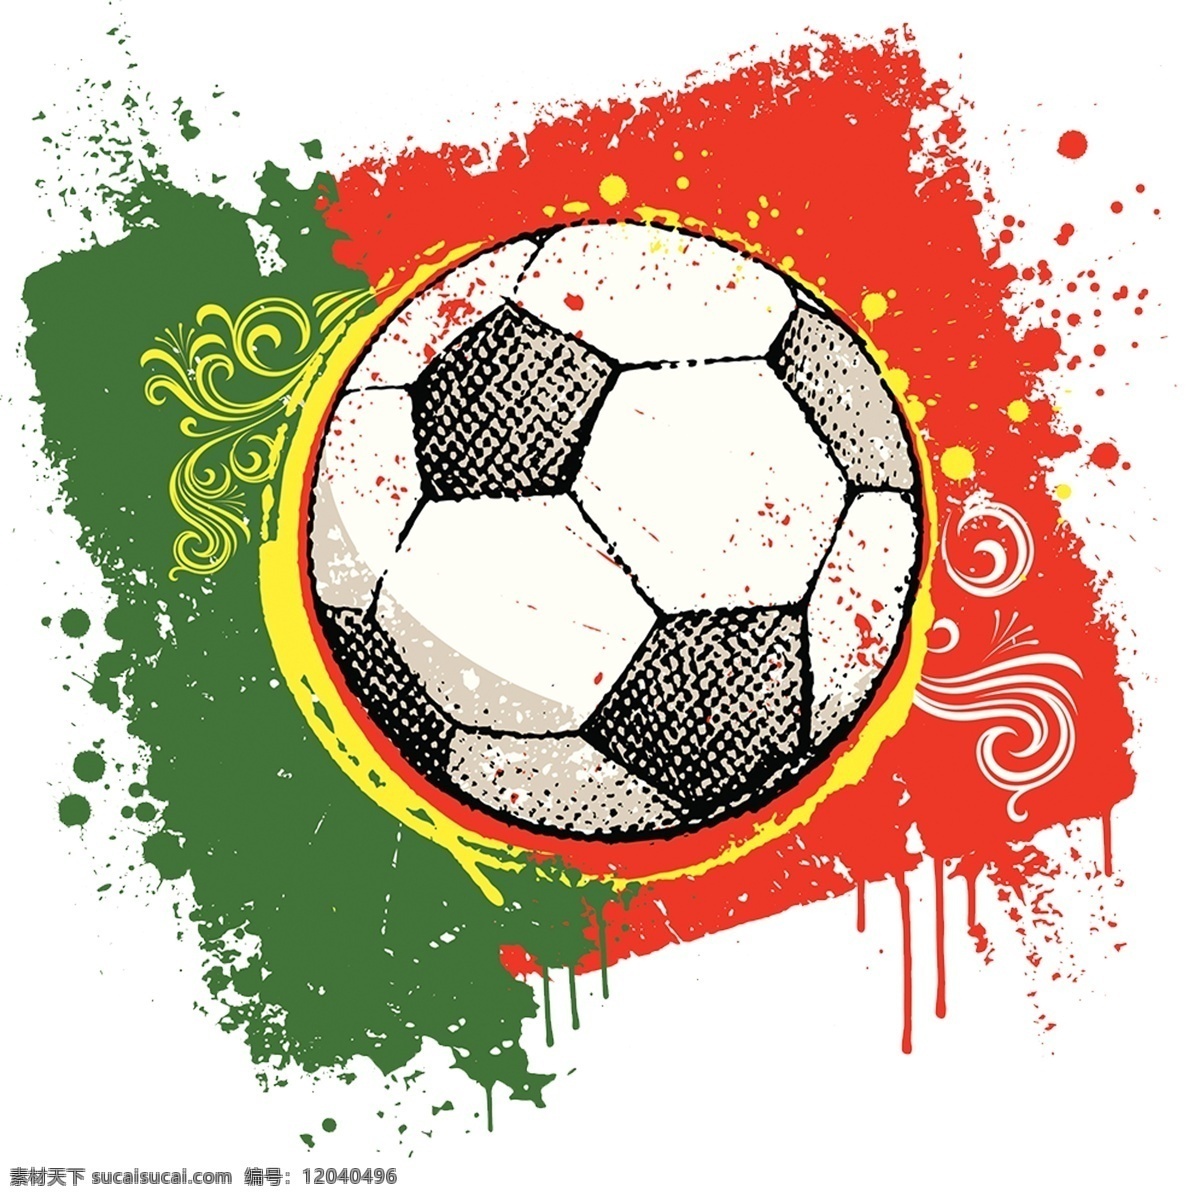 葡萄牙 足球 插画 元素 葡萄牙国旗 世界杯 矢量足球 球迷狂欢